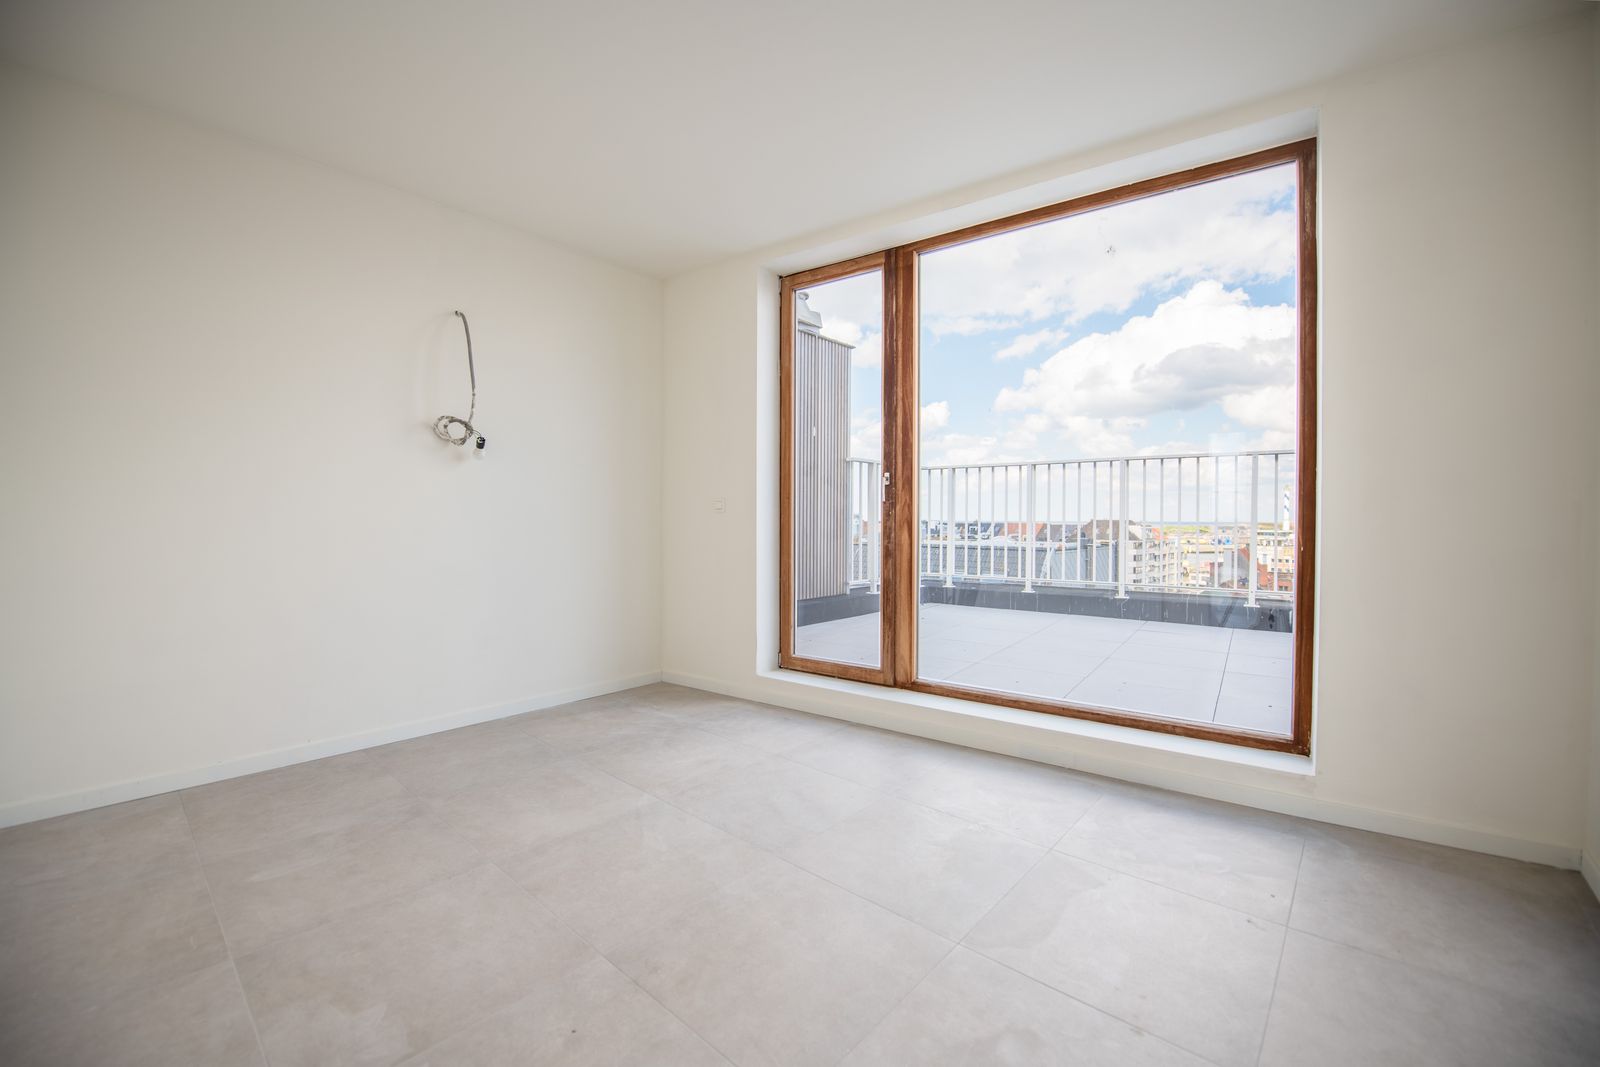 Nieuwbouw penthouse appartement met zonnige terrassen in hartje Oostende foto 6